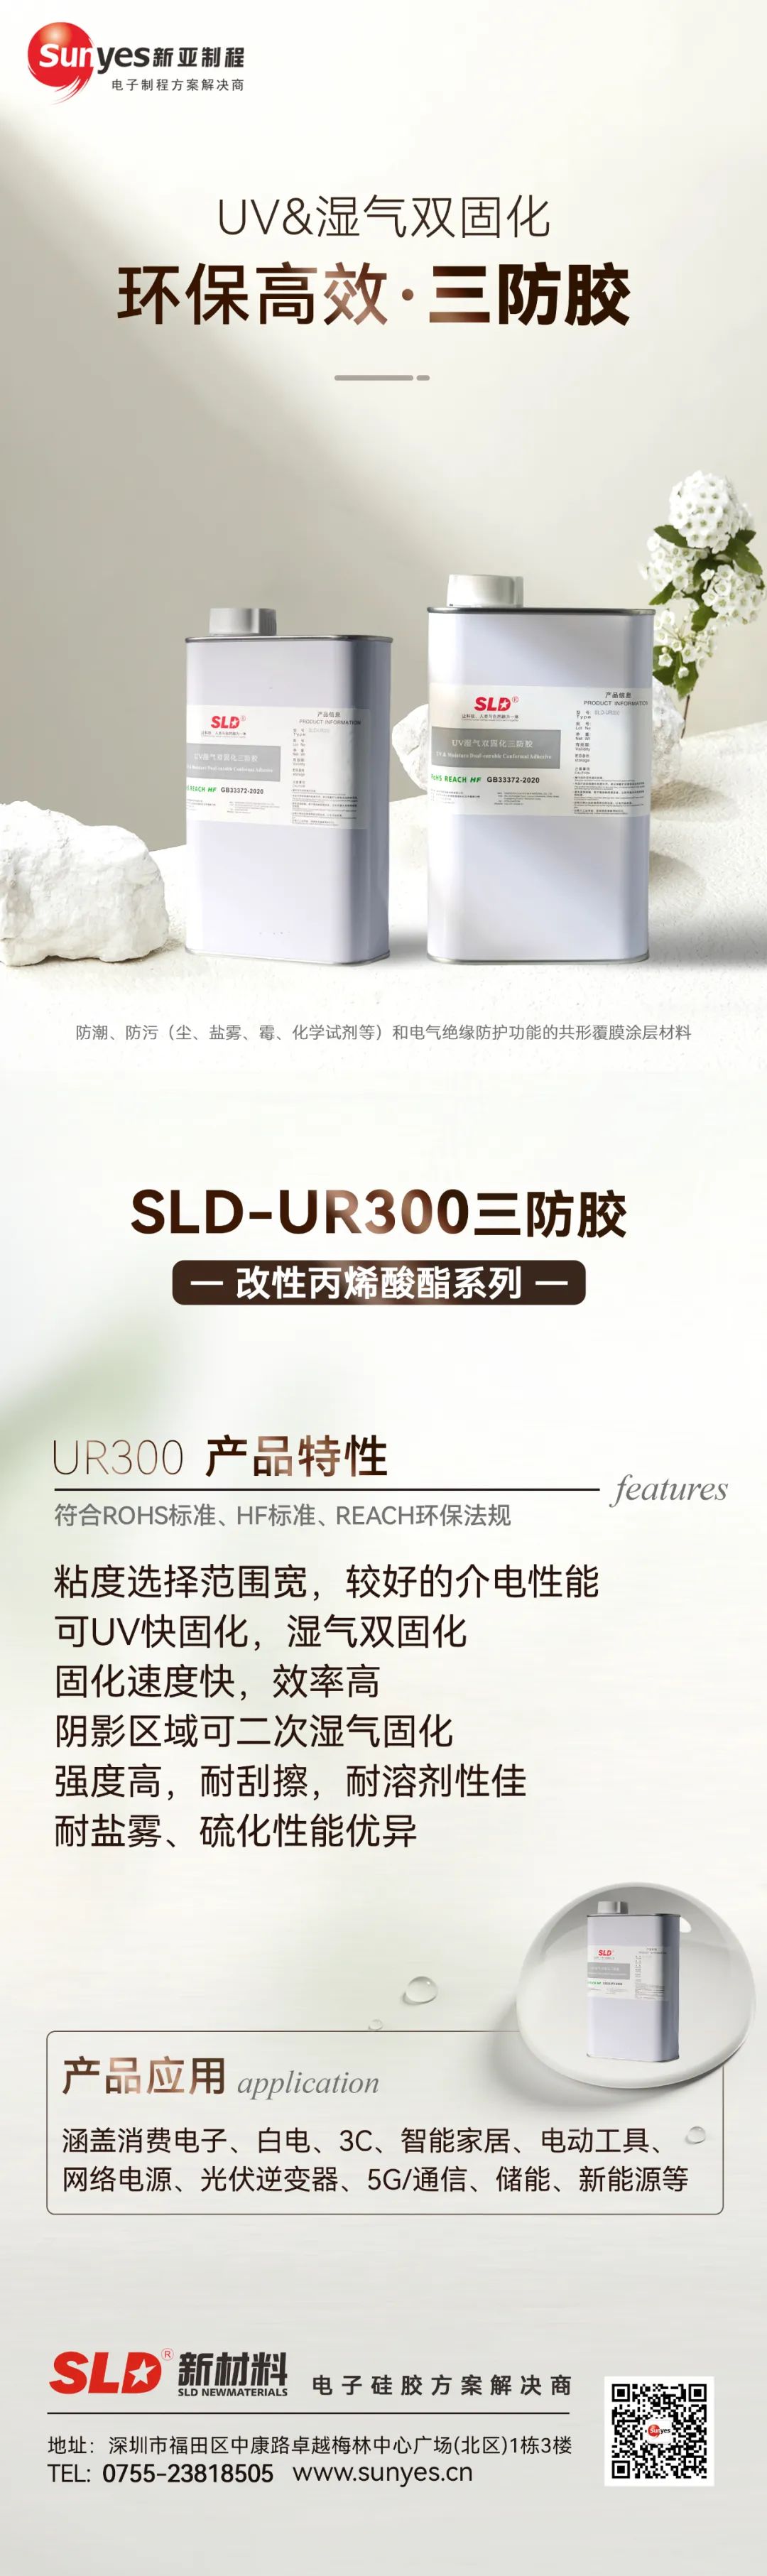 三防胶SLD-UR300系列的应用解决方案